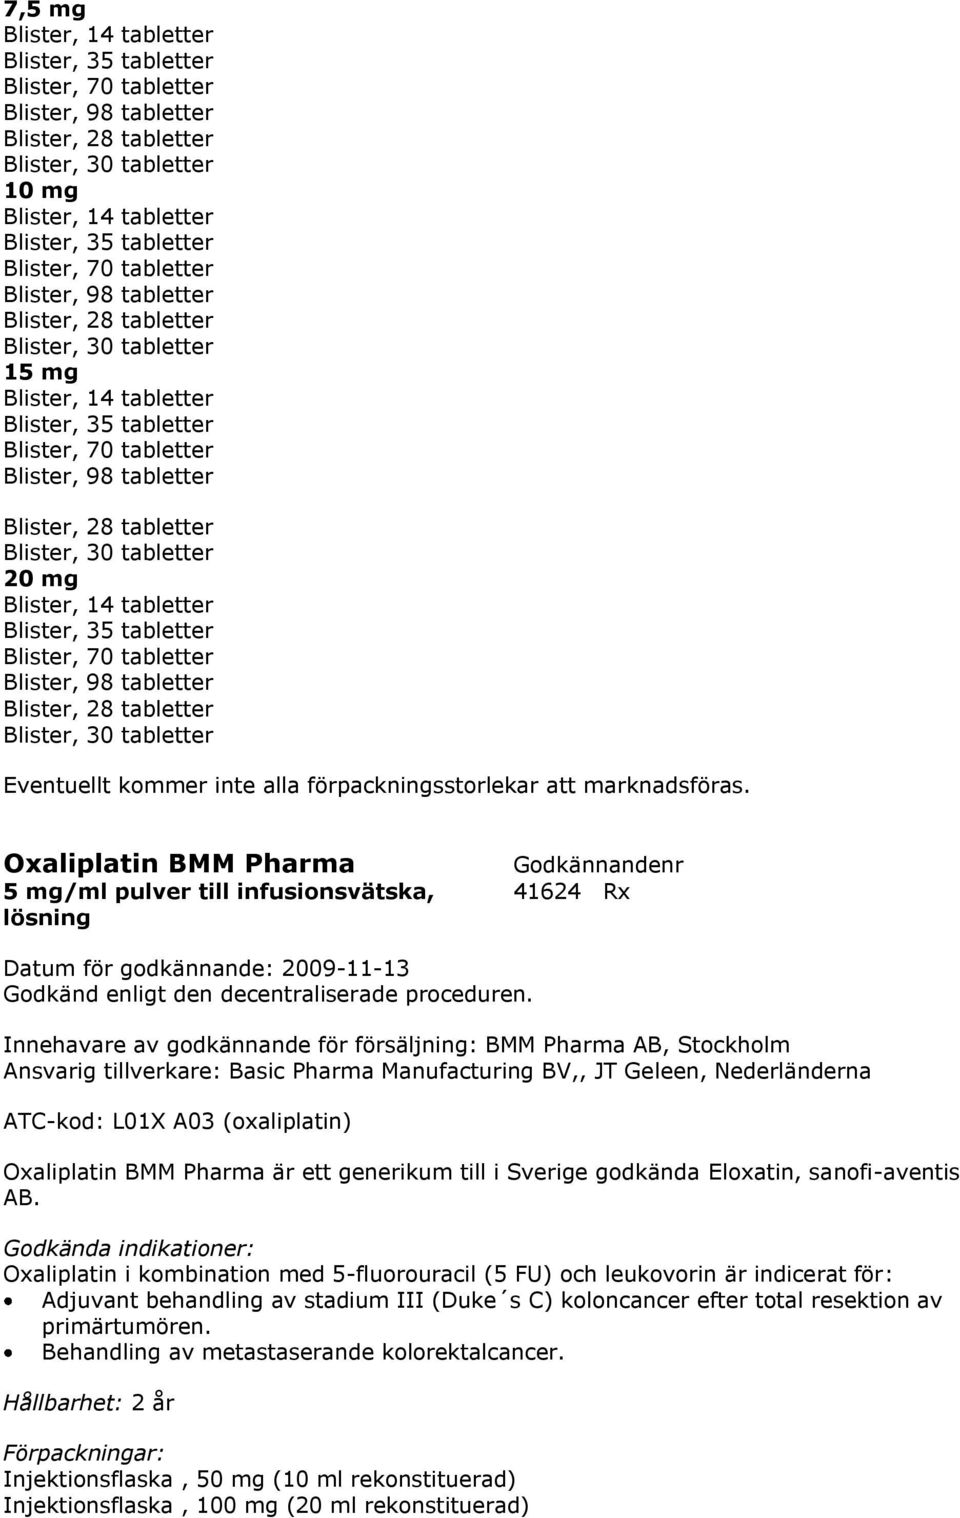 Oxaliplatin BMM Pharma 5 mg/ml pulver till infusionsvätska, 41624 Rx lösning Innehavare av godkännande för försäljning: BMM Pharma AB, Stockholm Ansvarig tillverkare: Basic Pharma Manufacturing BV,,